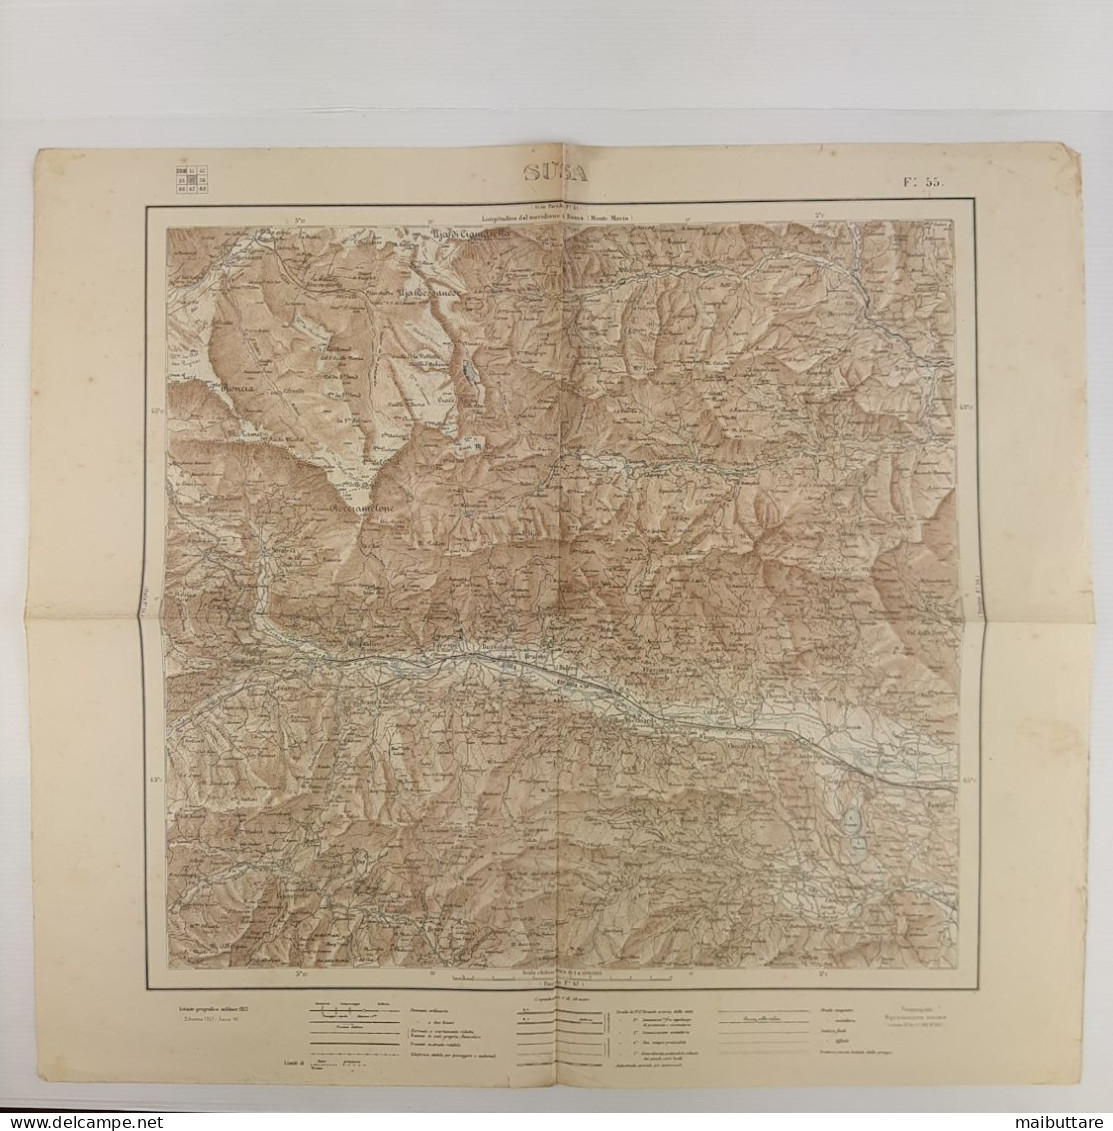 Carta Geografica, Cartina Mappa Militare Susa Torino Piemonte F55 Della Carta D'Italia Scala 1:100.000 - Cartes Géographiques